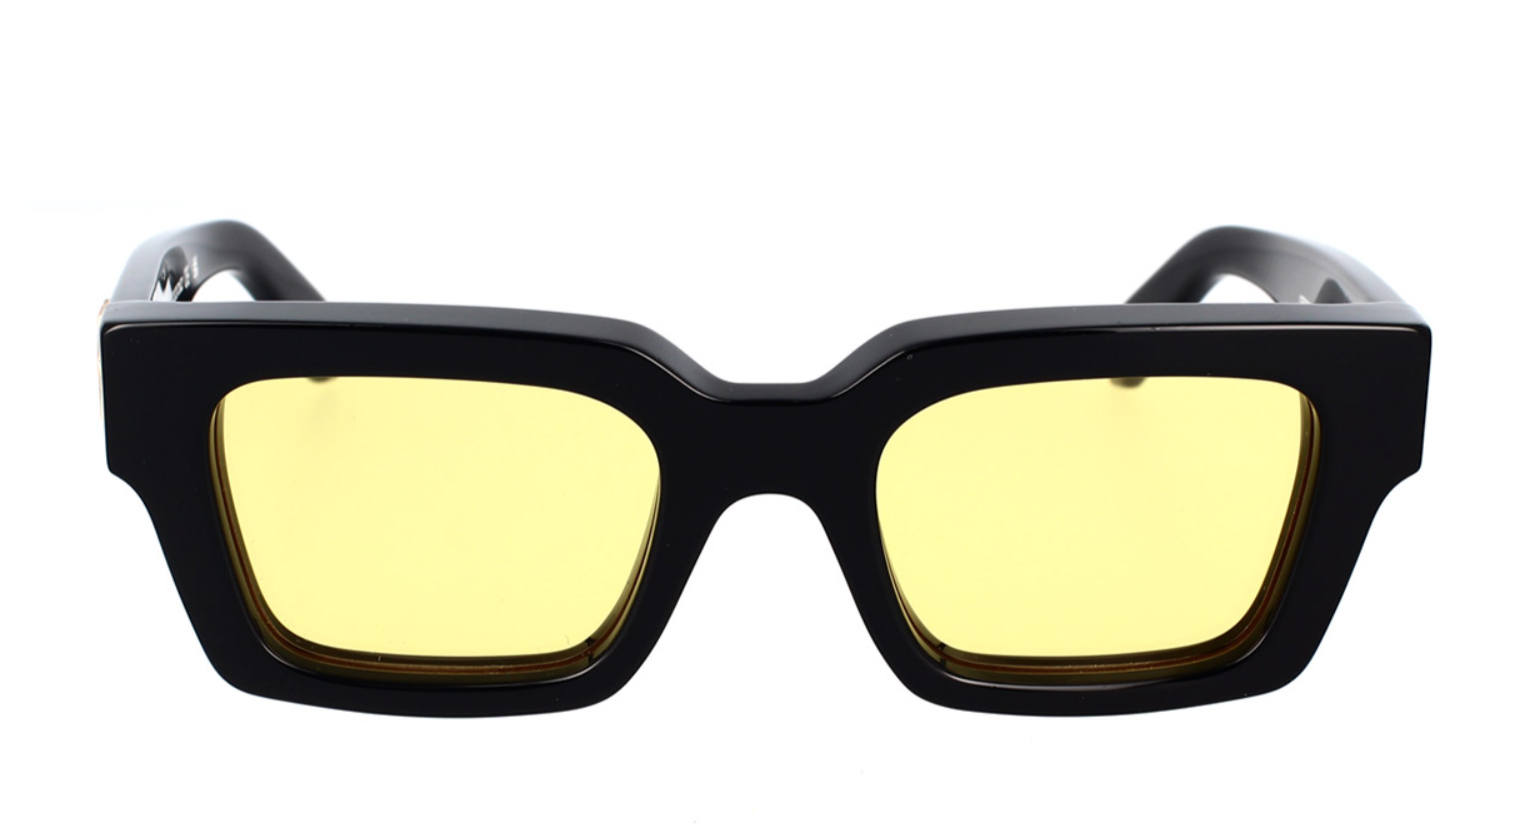 OFF-White Okulary przeciwsłoneczne OERI126-1018